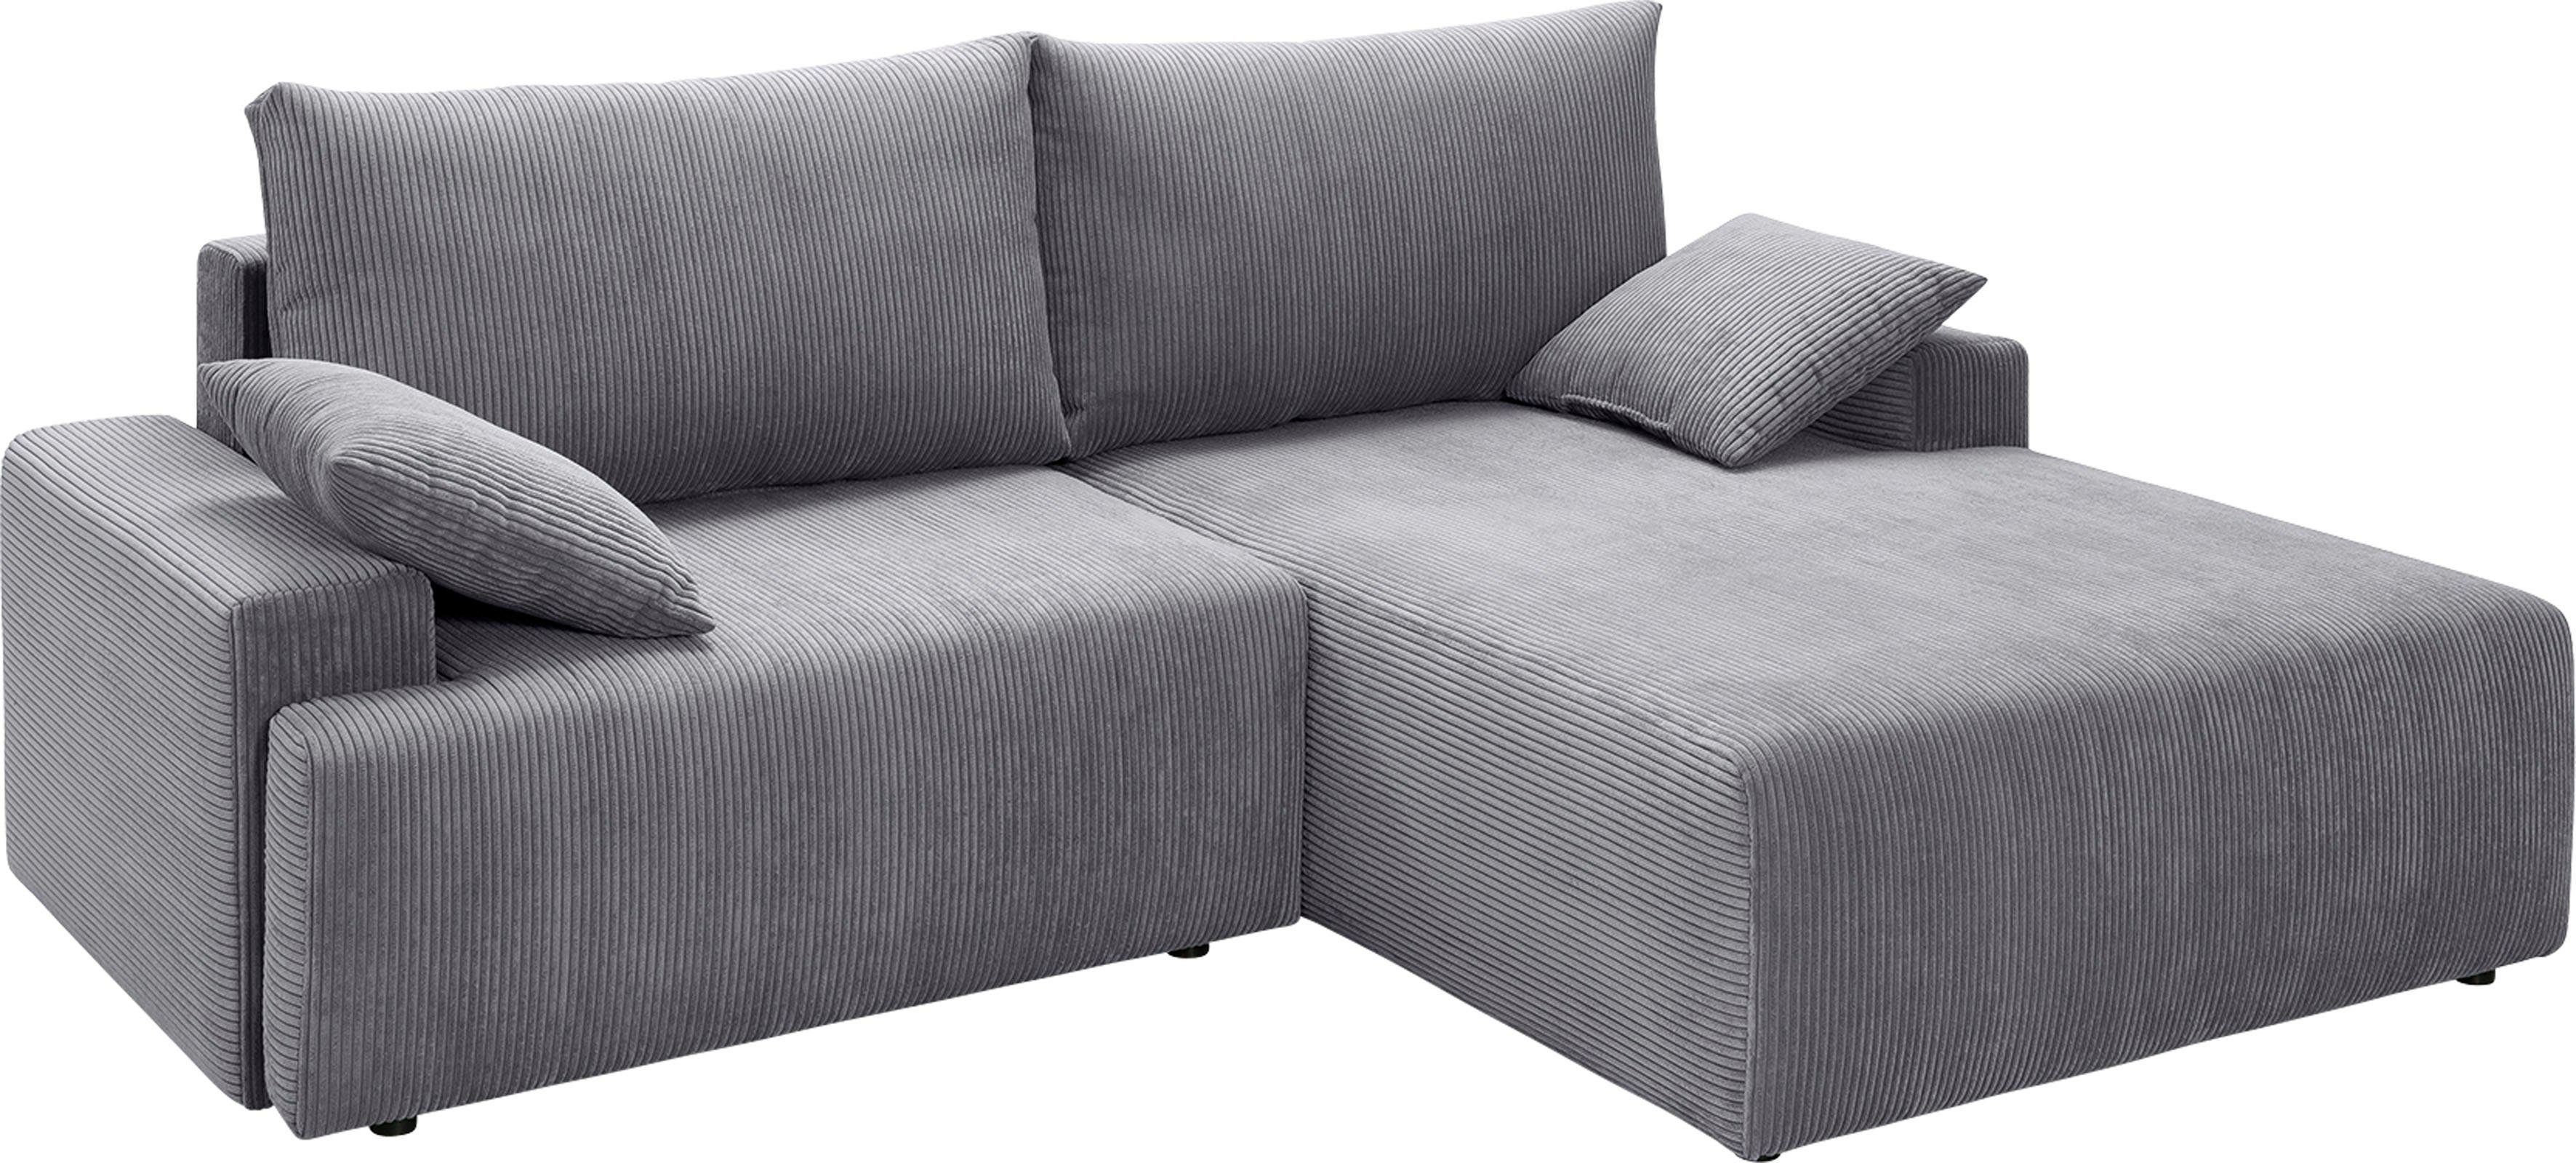 verschiedenen - Ecksofa Orinoko, sofa Cord-Farben und Bettkasten fashion in exxpo Bettfunktion inklusive grey